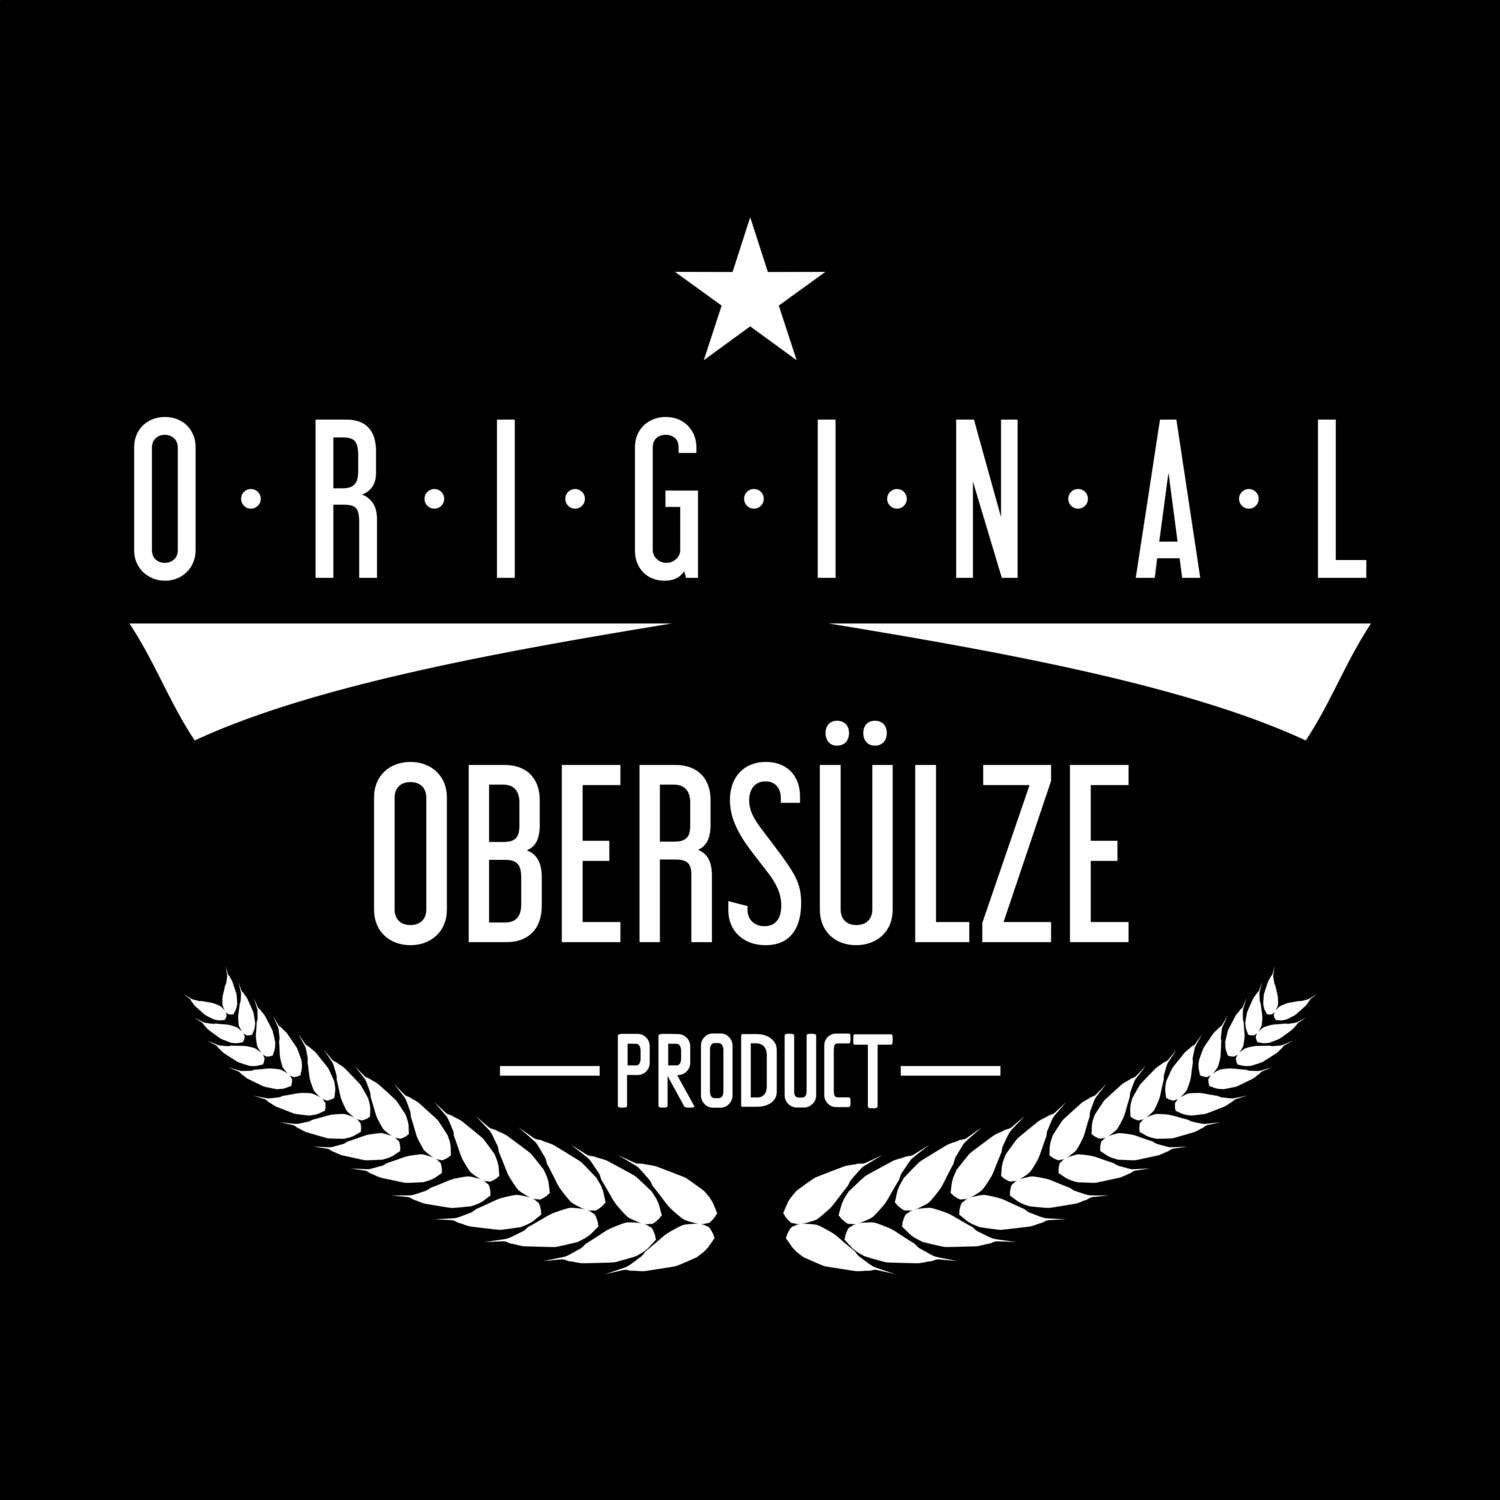 Obersülze T-Shirt »Original Product«